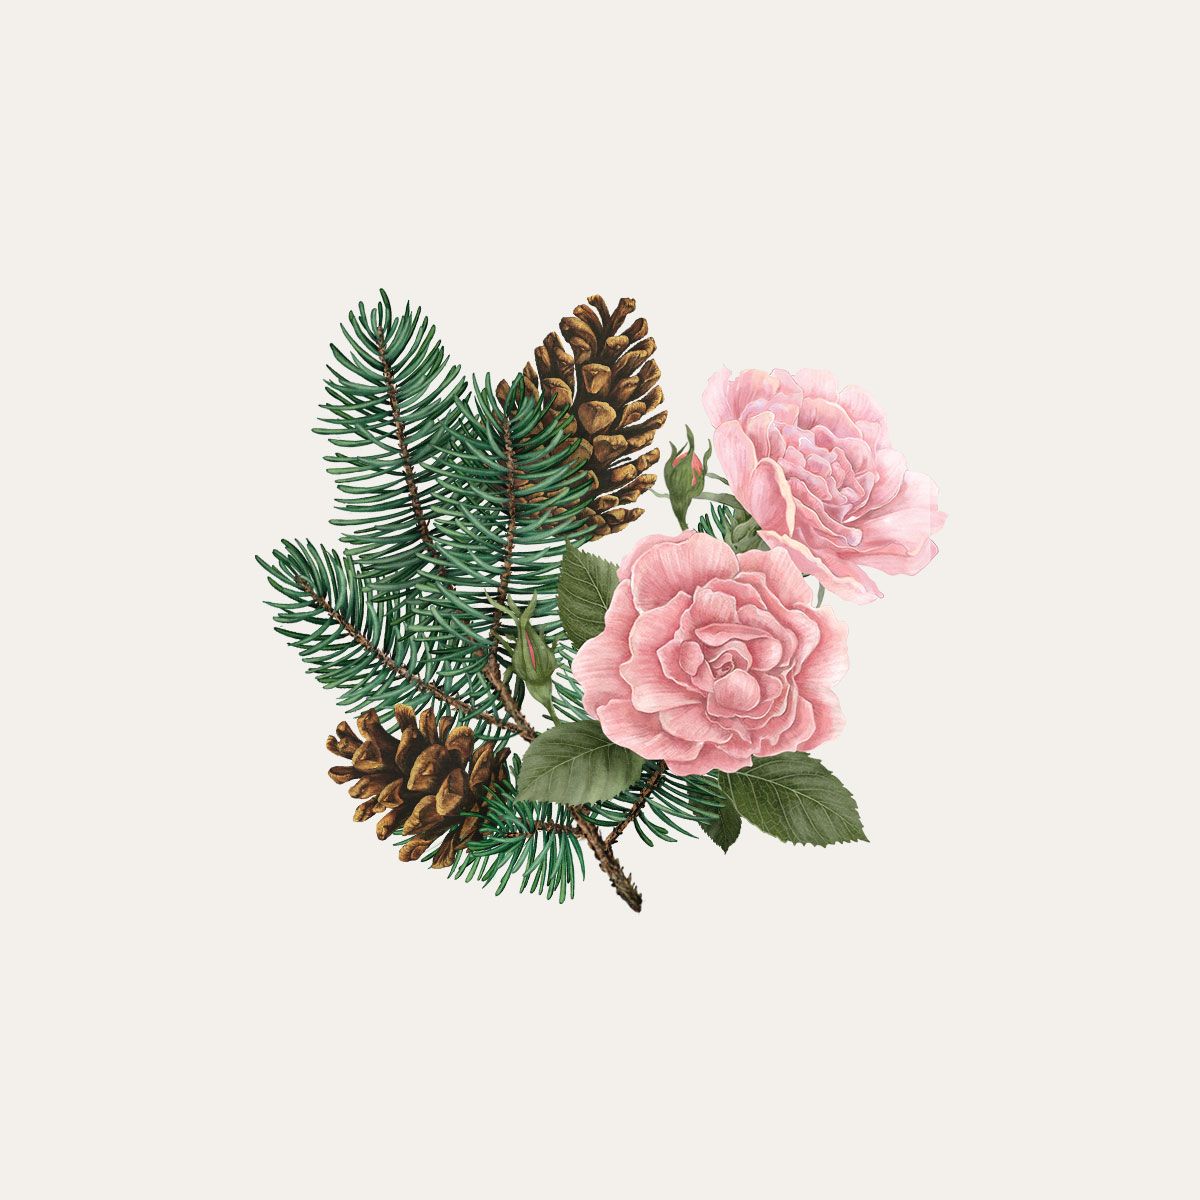 Siberian Pine & Winter Rose Botanical palet